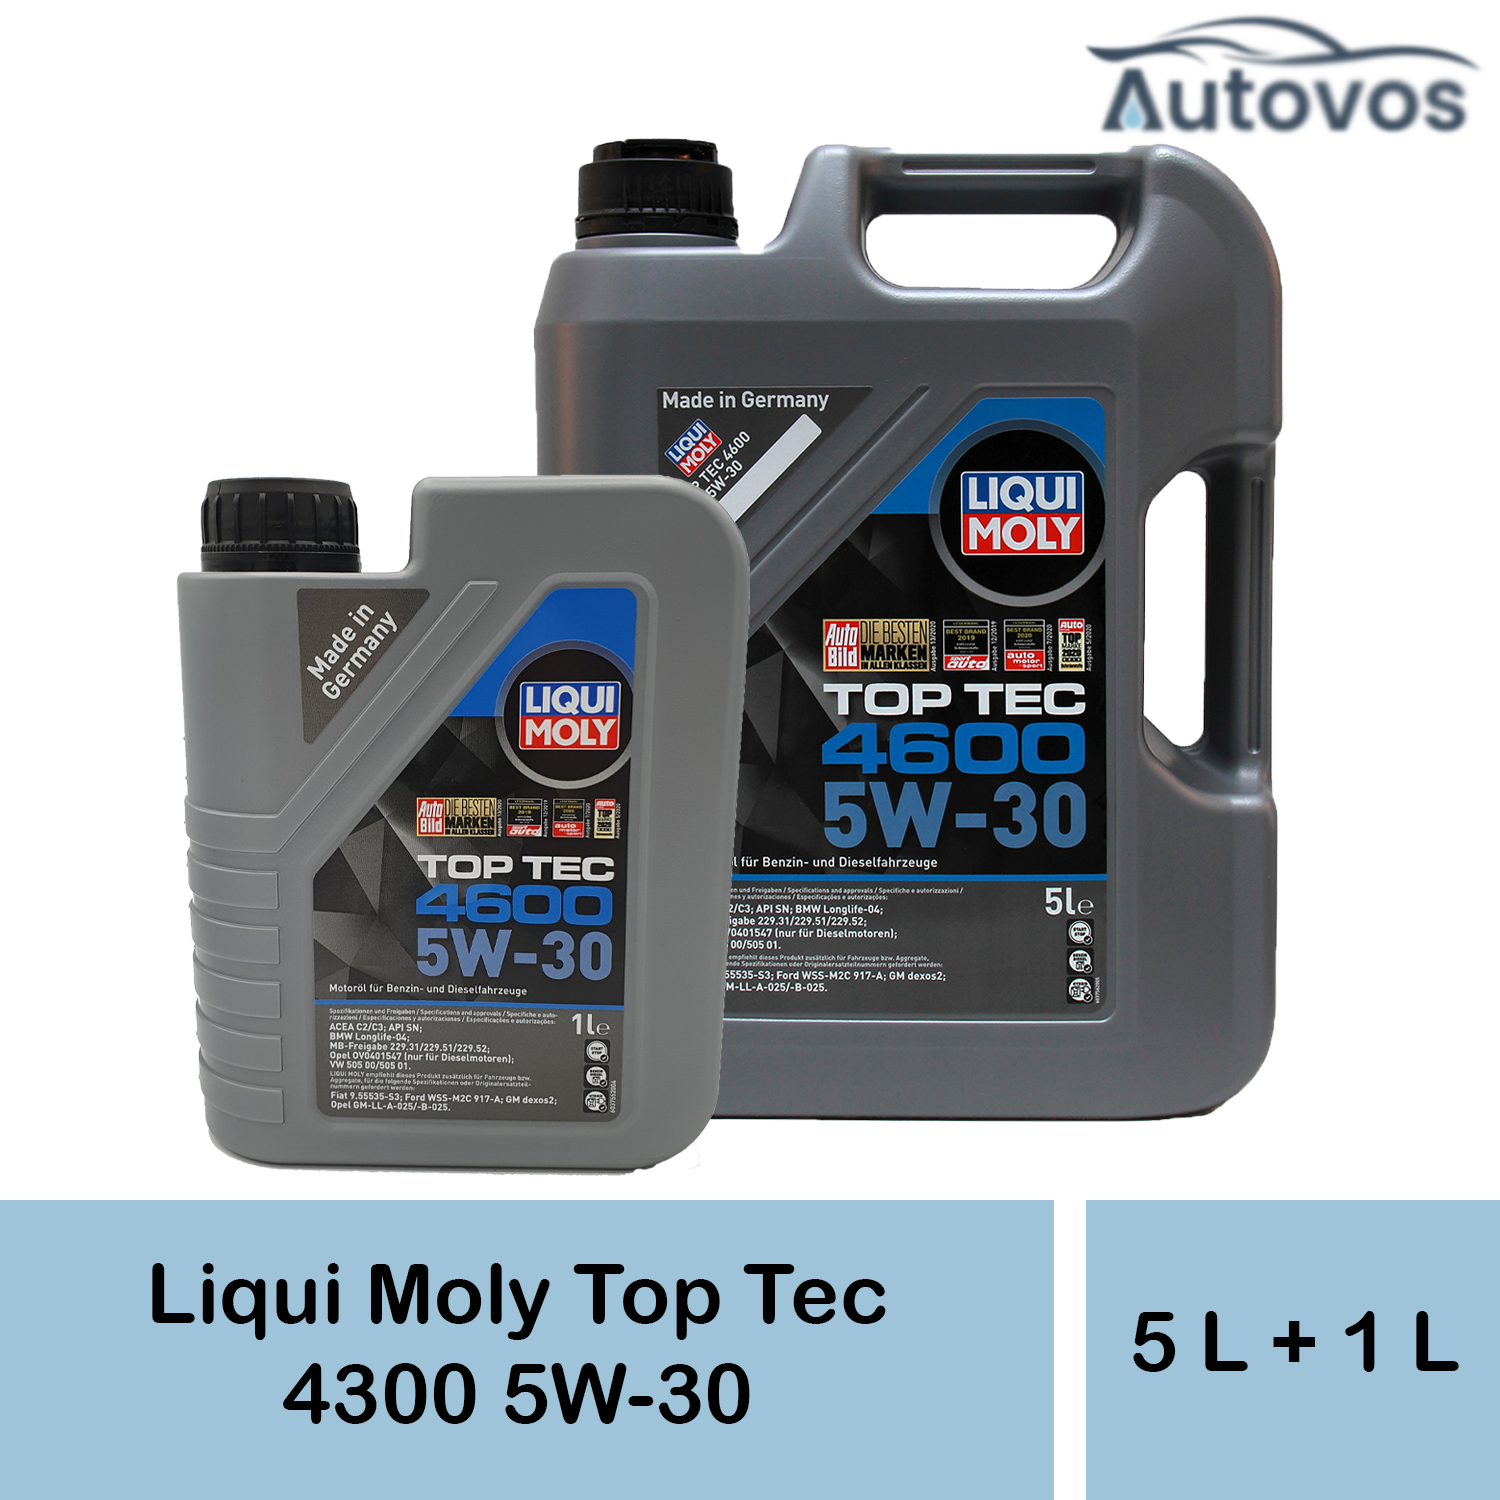 Liqui Moly Top Tec 4600 5W-30 6 Liter